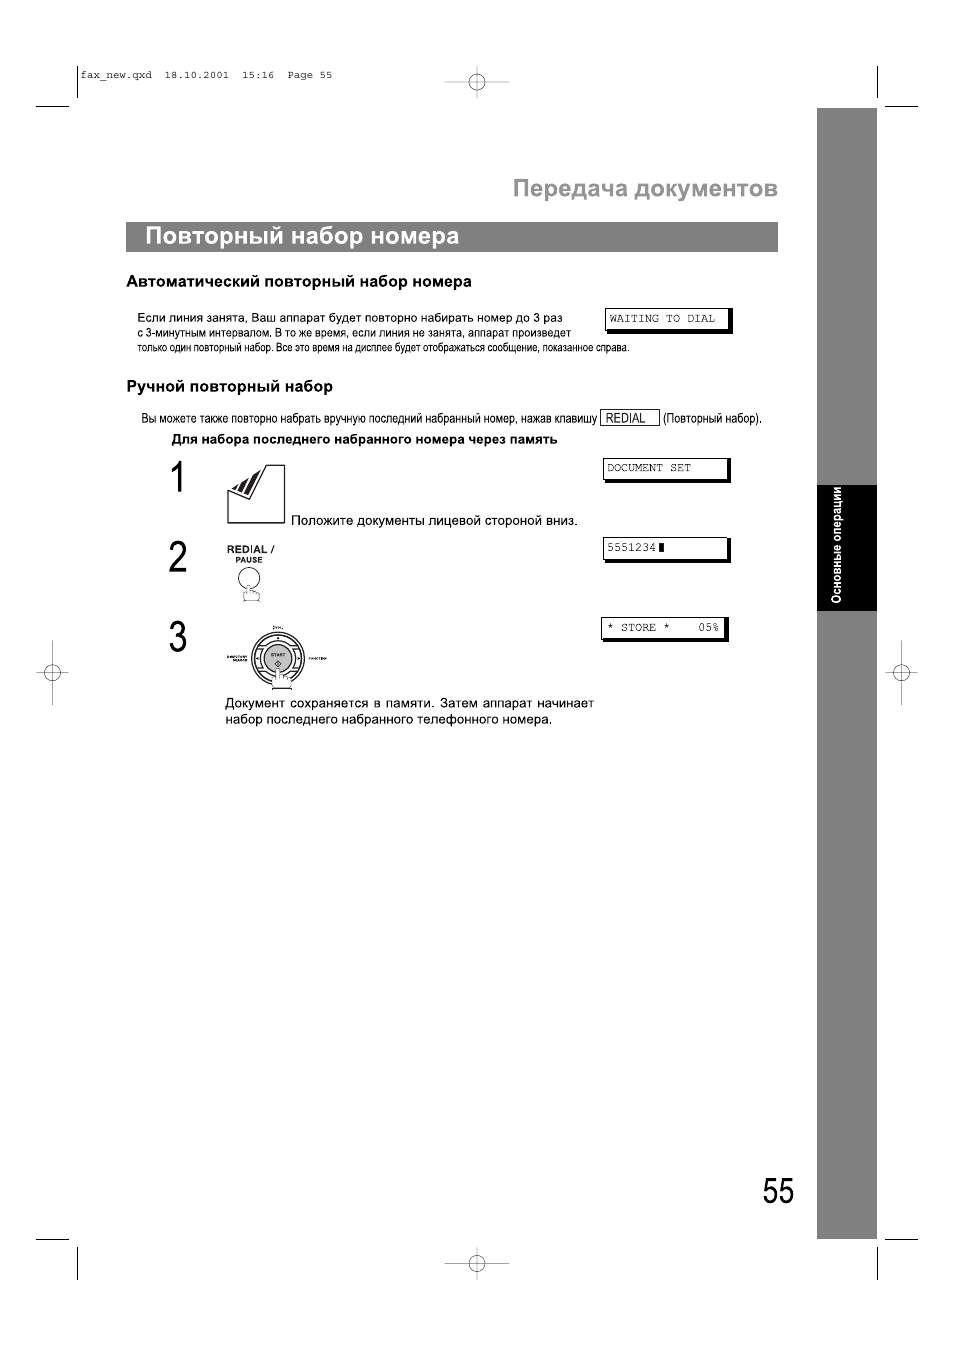 Повторный набор номера, Передача документов повторный набор номера | Инструкция по эксплуатации Panasonic UF-490 | Страница 55 / 121